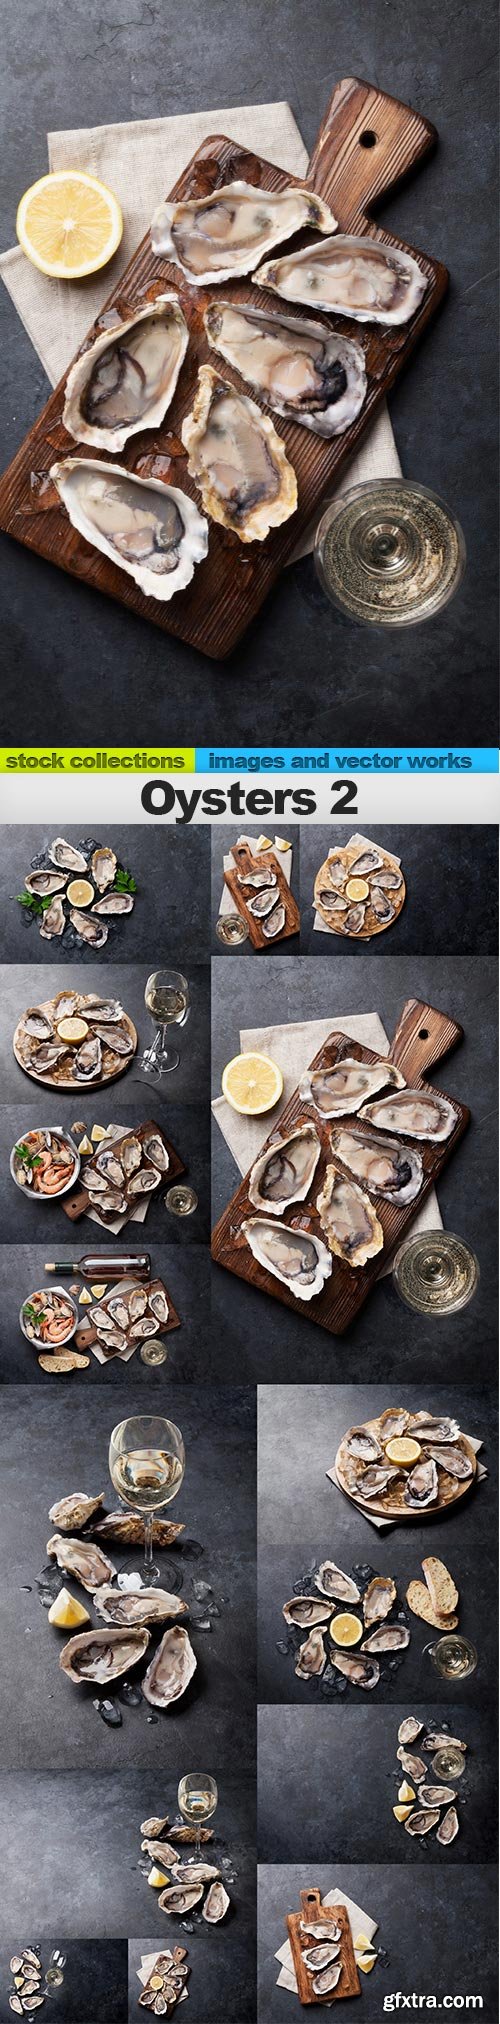 Oysters 2, 15 x UHQ JPEG